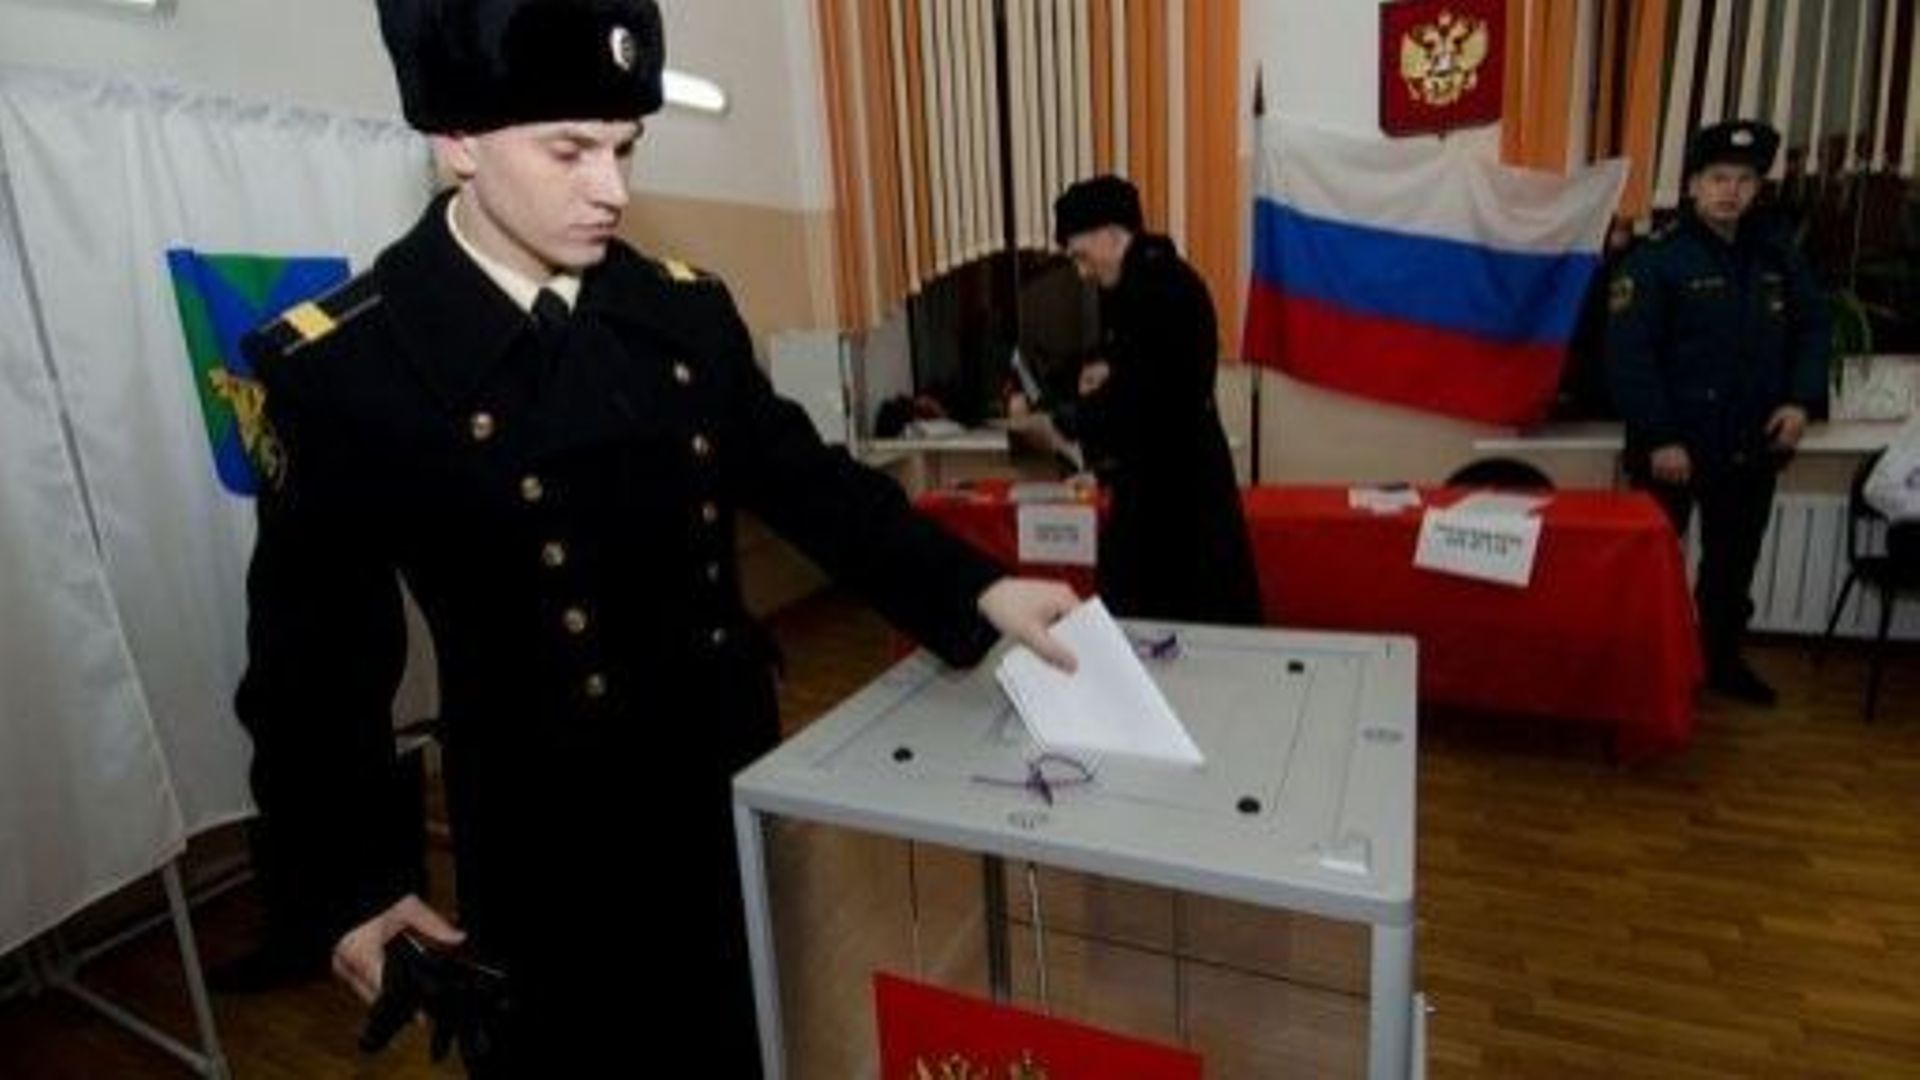 Un marin vote pour la présidentielle à Vladivostok, dans l'extrême-orient russe, le 4 mars 2012